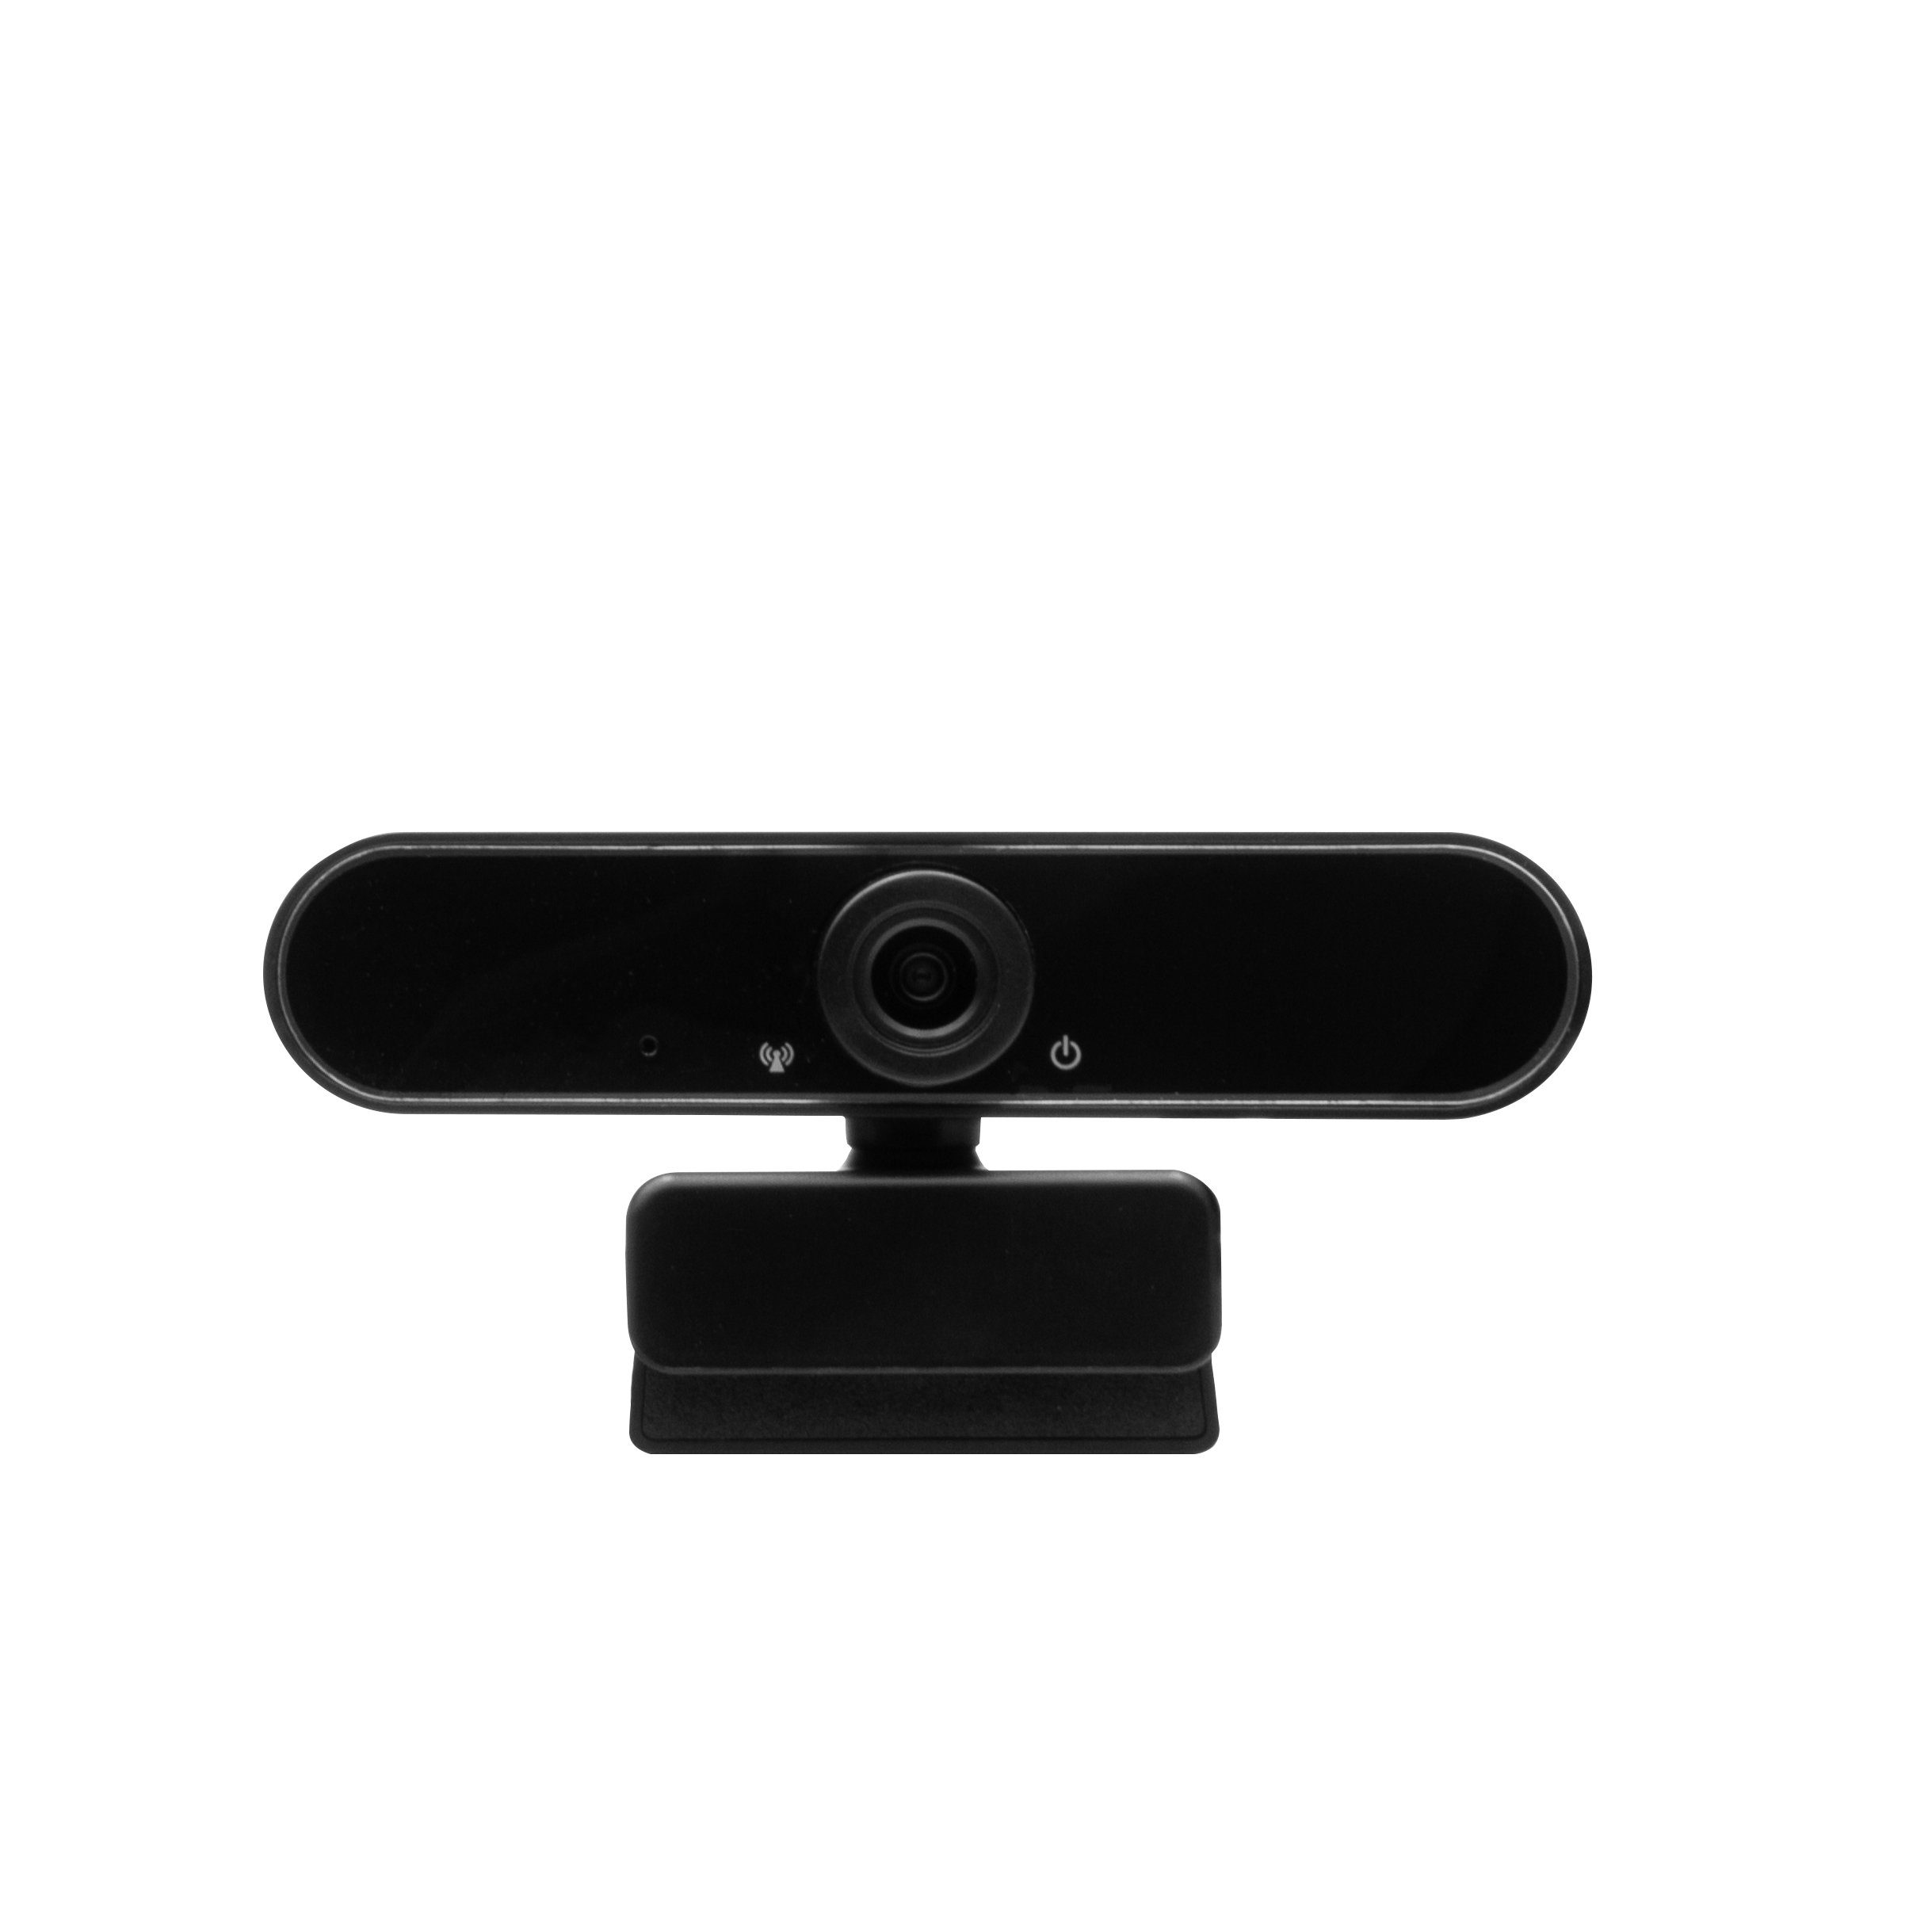 Headset Hyrican schwarz Startup ST-SM50 Collection Streamer Studio DW1 Mikrofon + + kabelgebunden, + Eingabegeräte-Set, Striker ST-GH530 USB, + Webcam